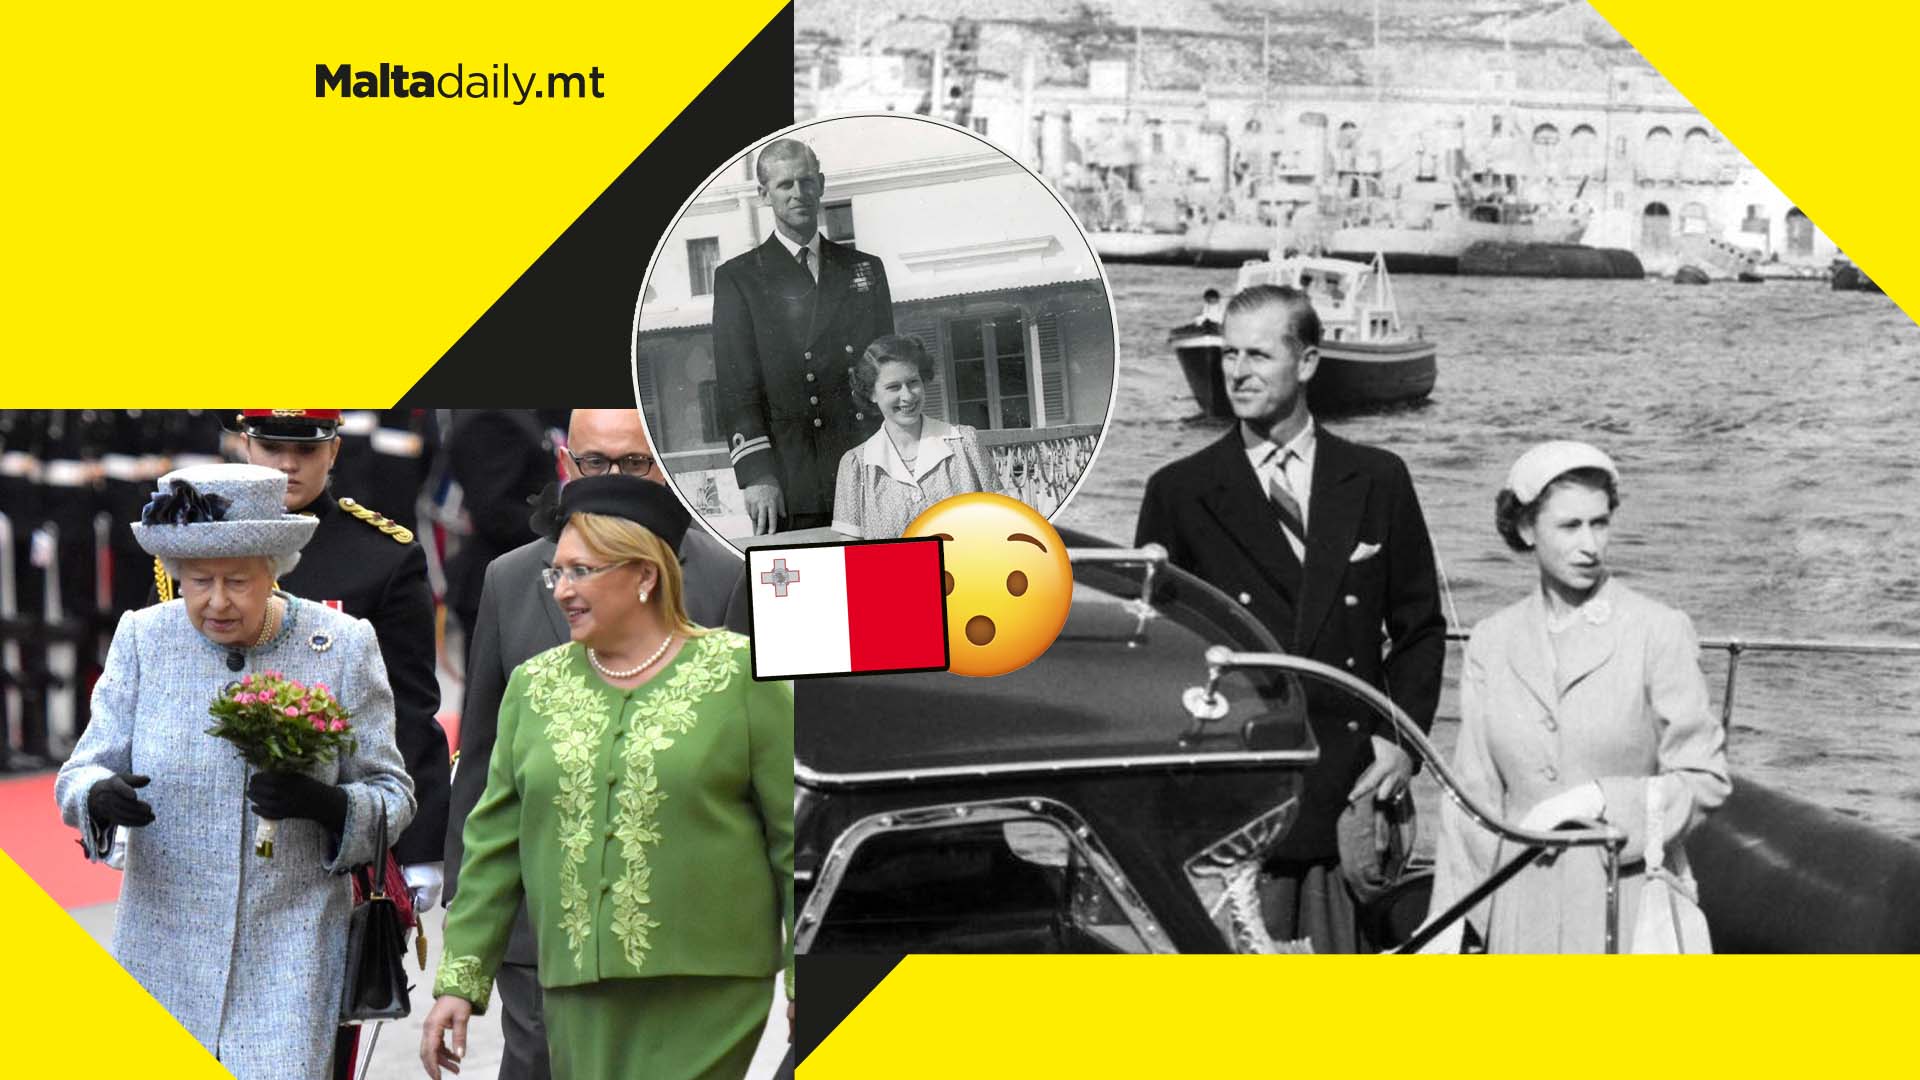 Home away from UK: Queen Elizabeth II’s history with Malta